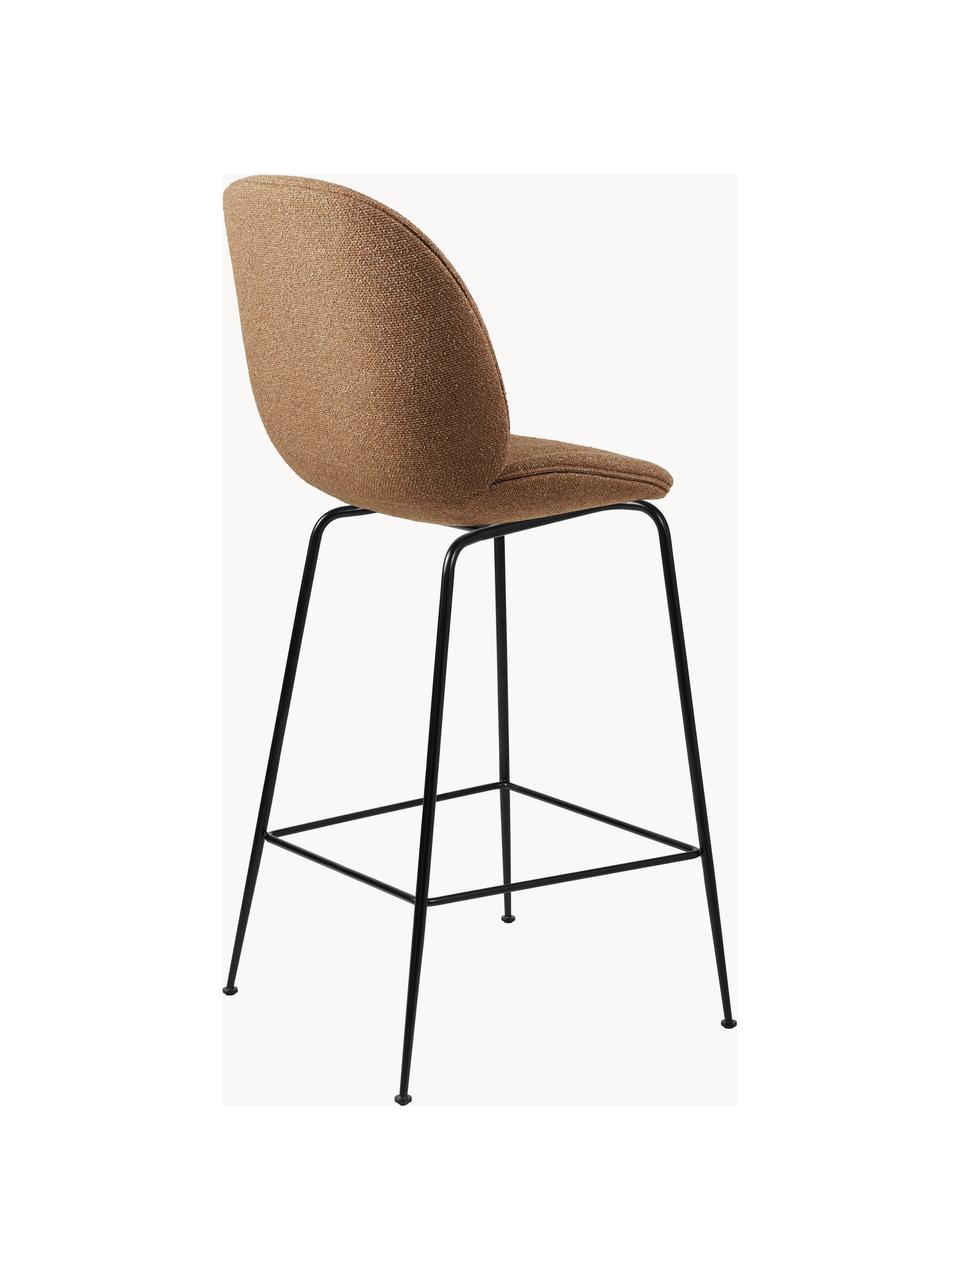 Krzesło barowe z wełny Beetle, Tapicerka: 100% wełna, Nogi: stal powlekana, Terakota, czarny matowy, S 54 x W 108 cm